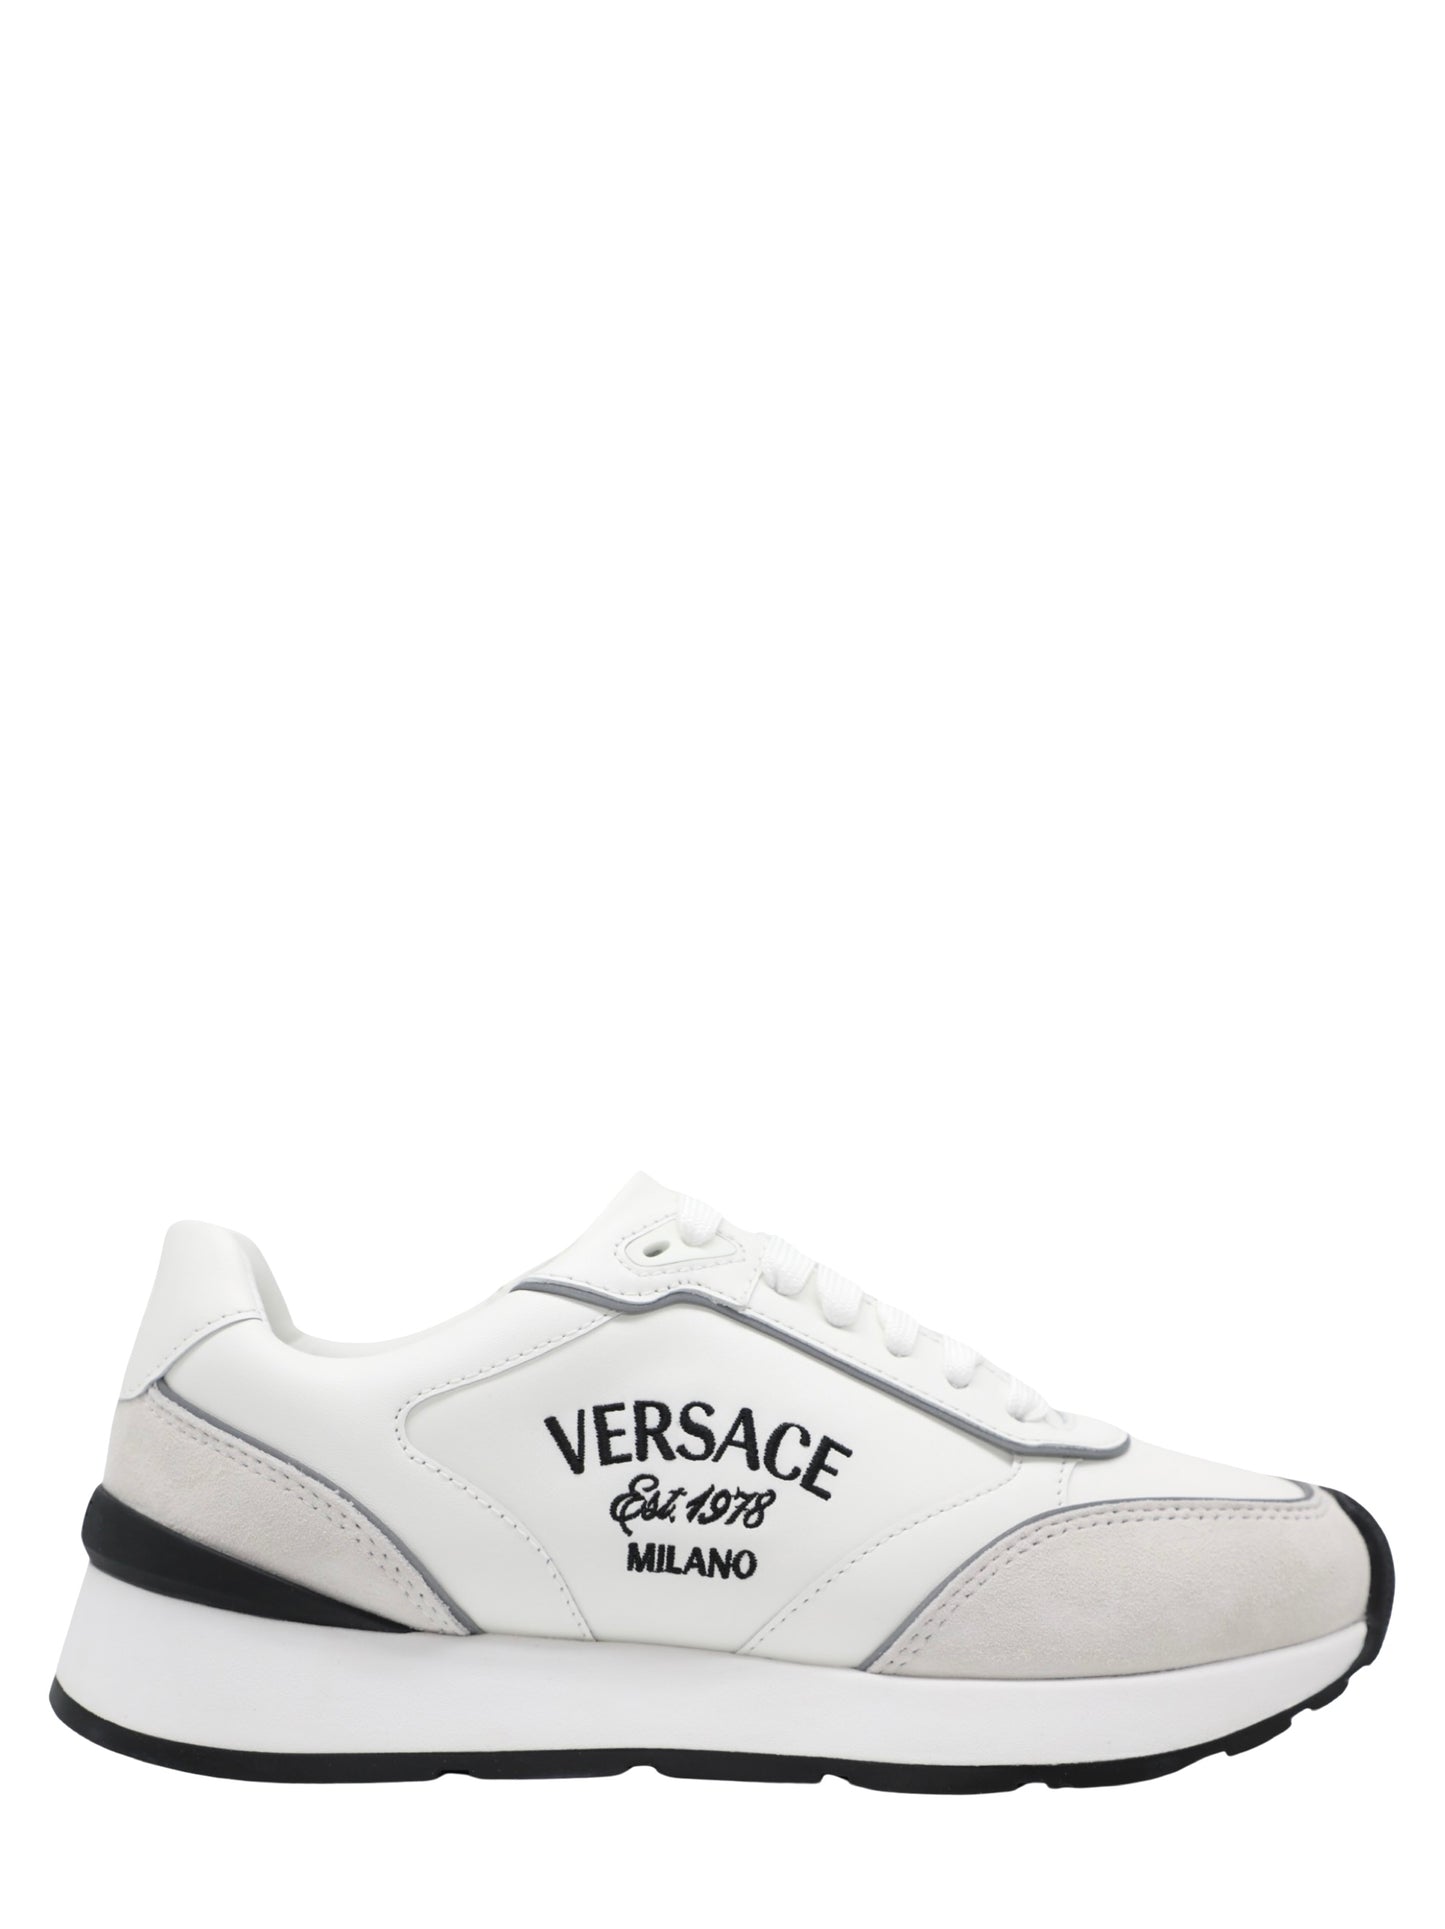 Versace Milano Runner Sneaker